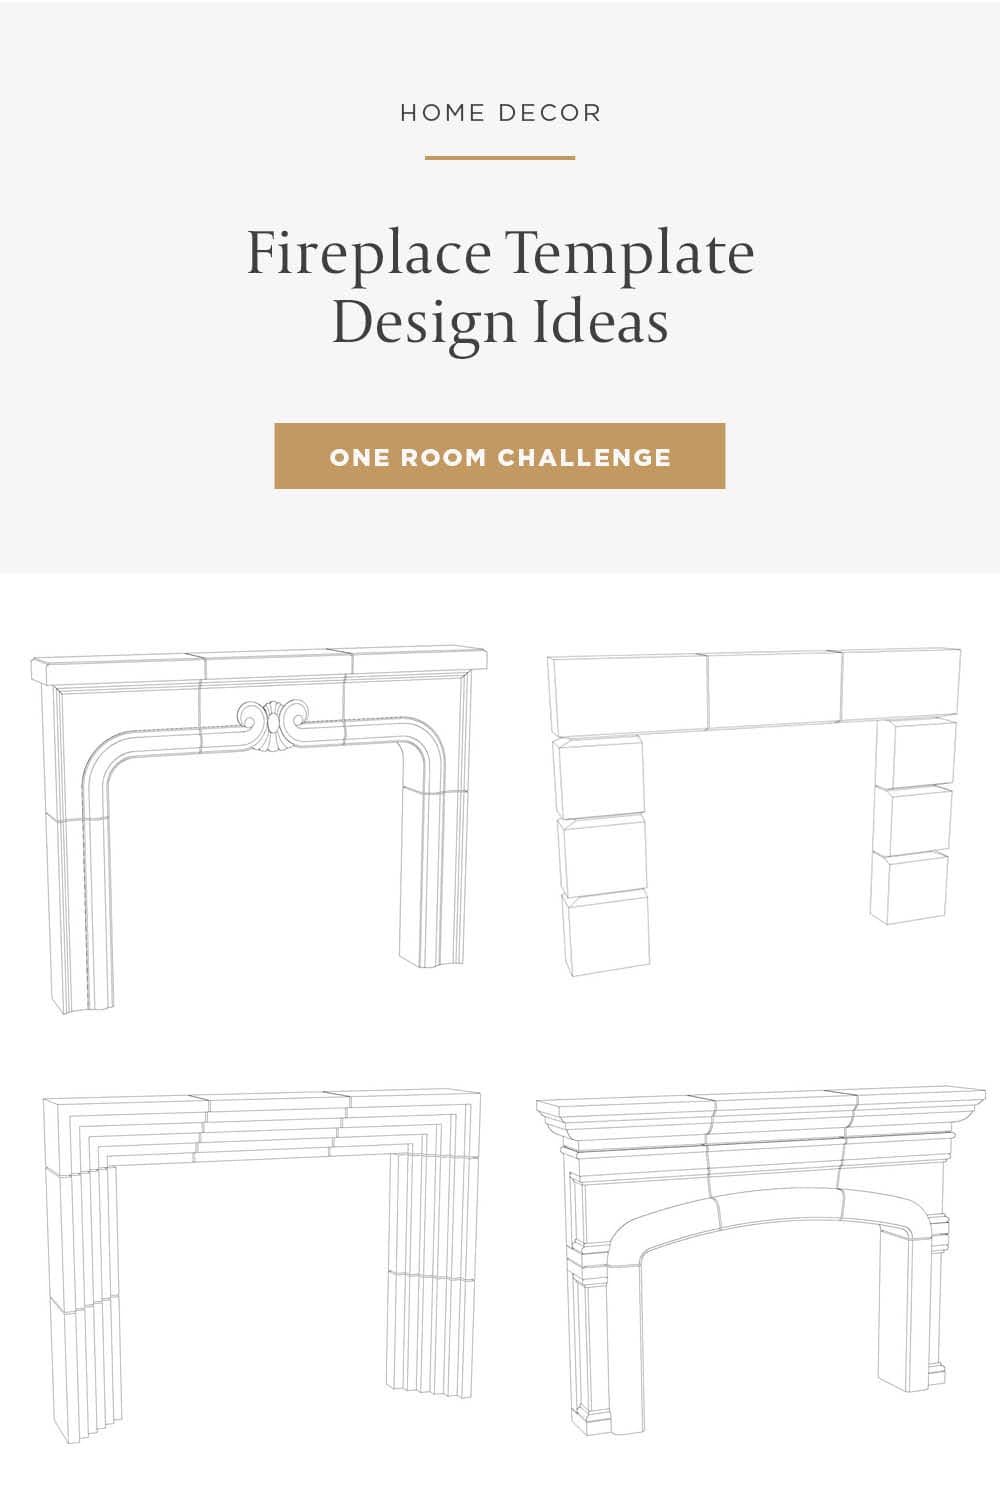 Custom Fireplace Design Ideas